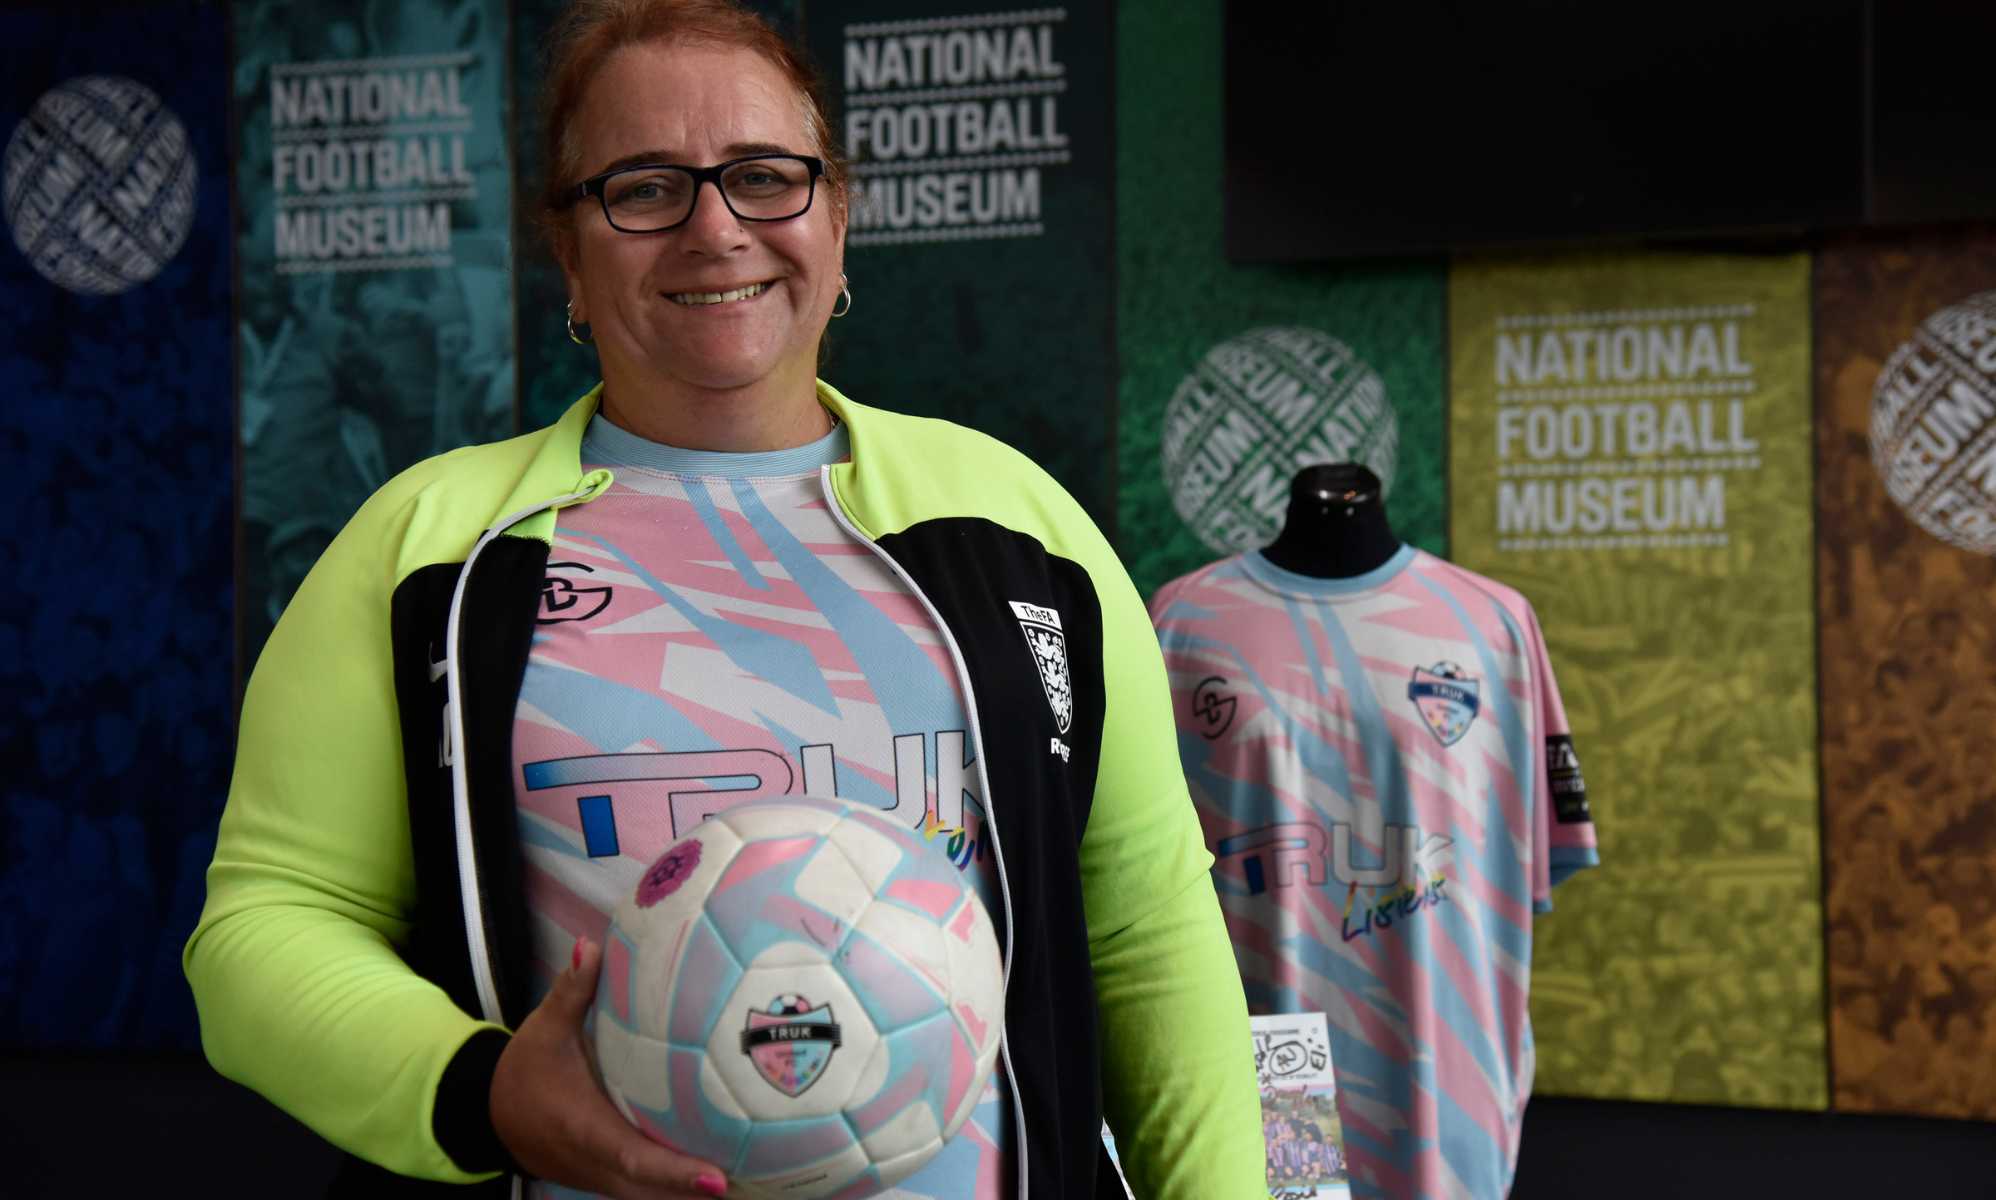 Una árbitro transexual premiada por aparecer en el Museo Nacional del Fútbol